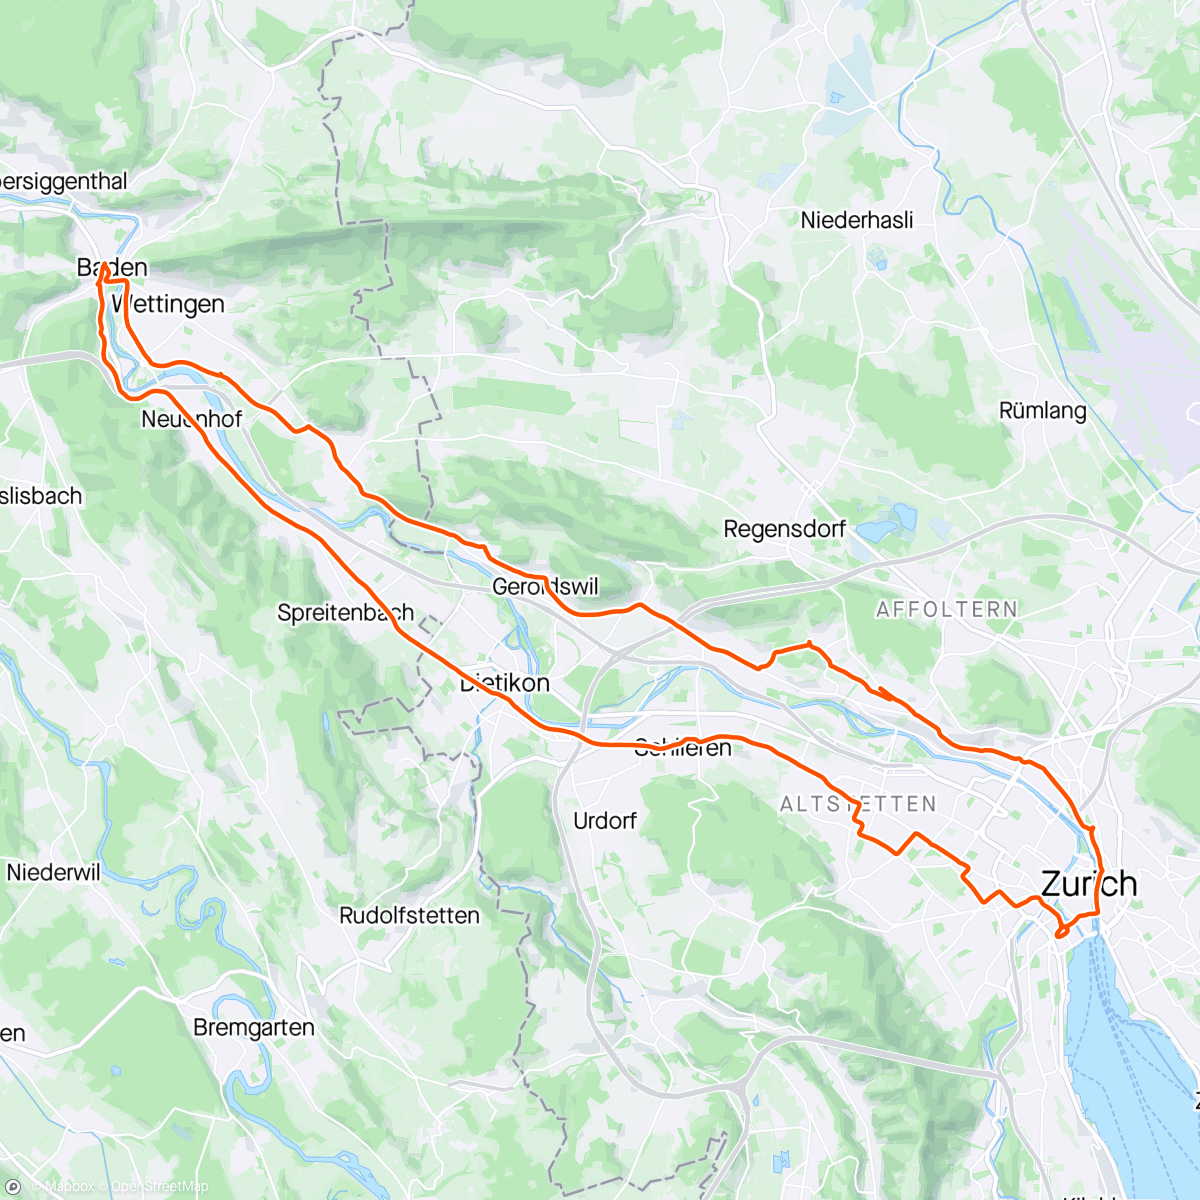 「AARGAU — Zürich-Höngg-Weiningen-BADEN-Schlieren-Zürich」活動的地圖